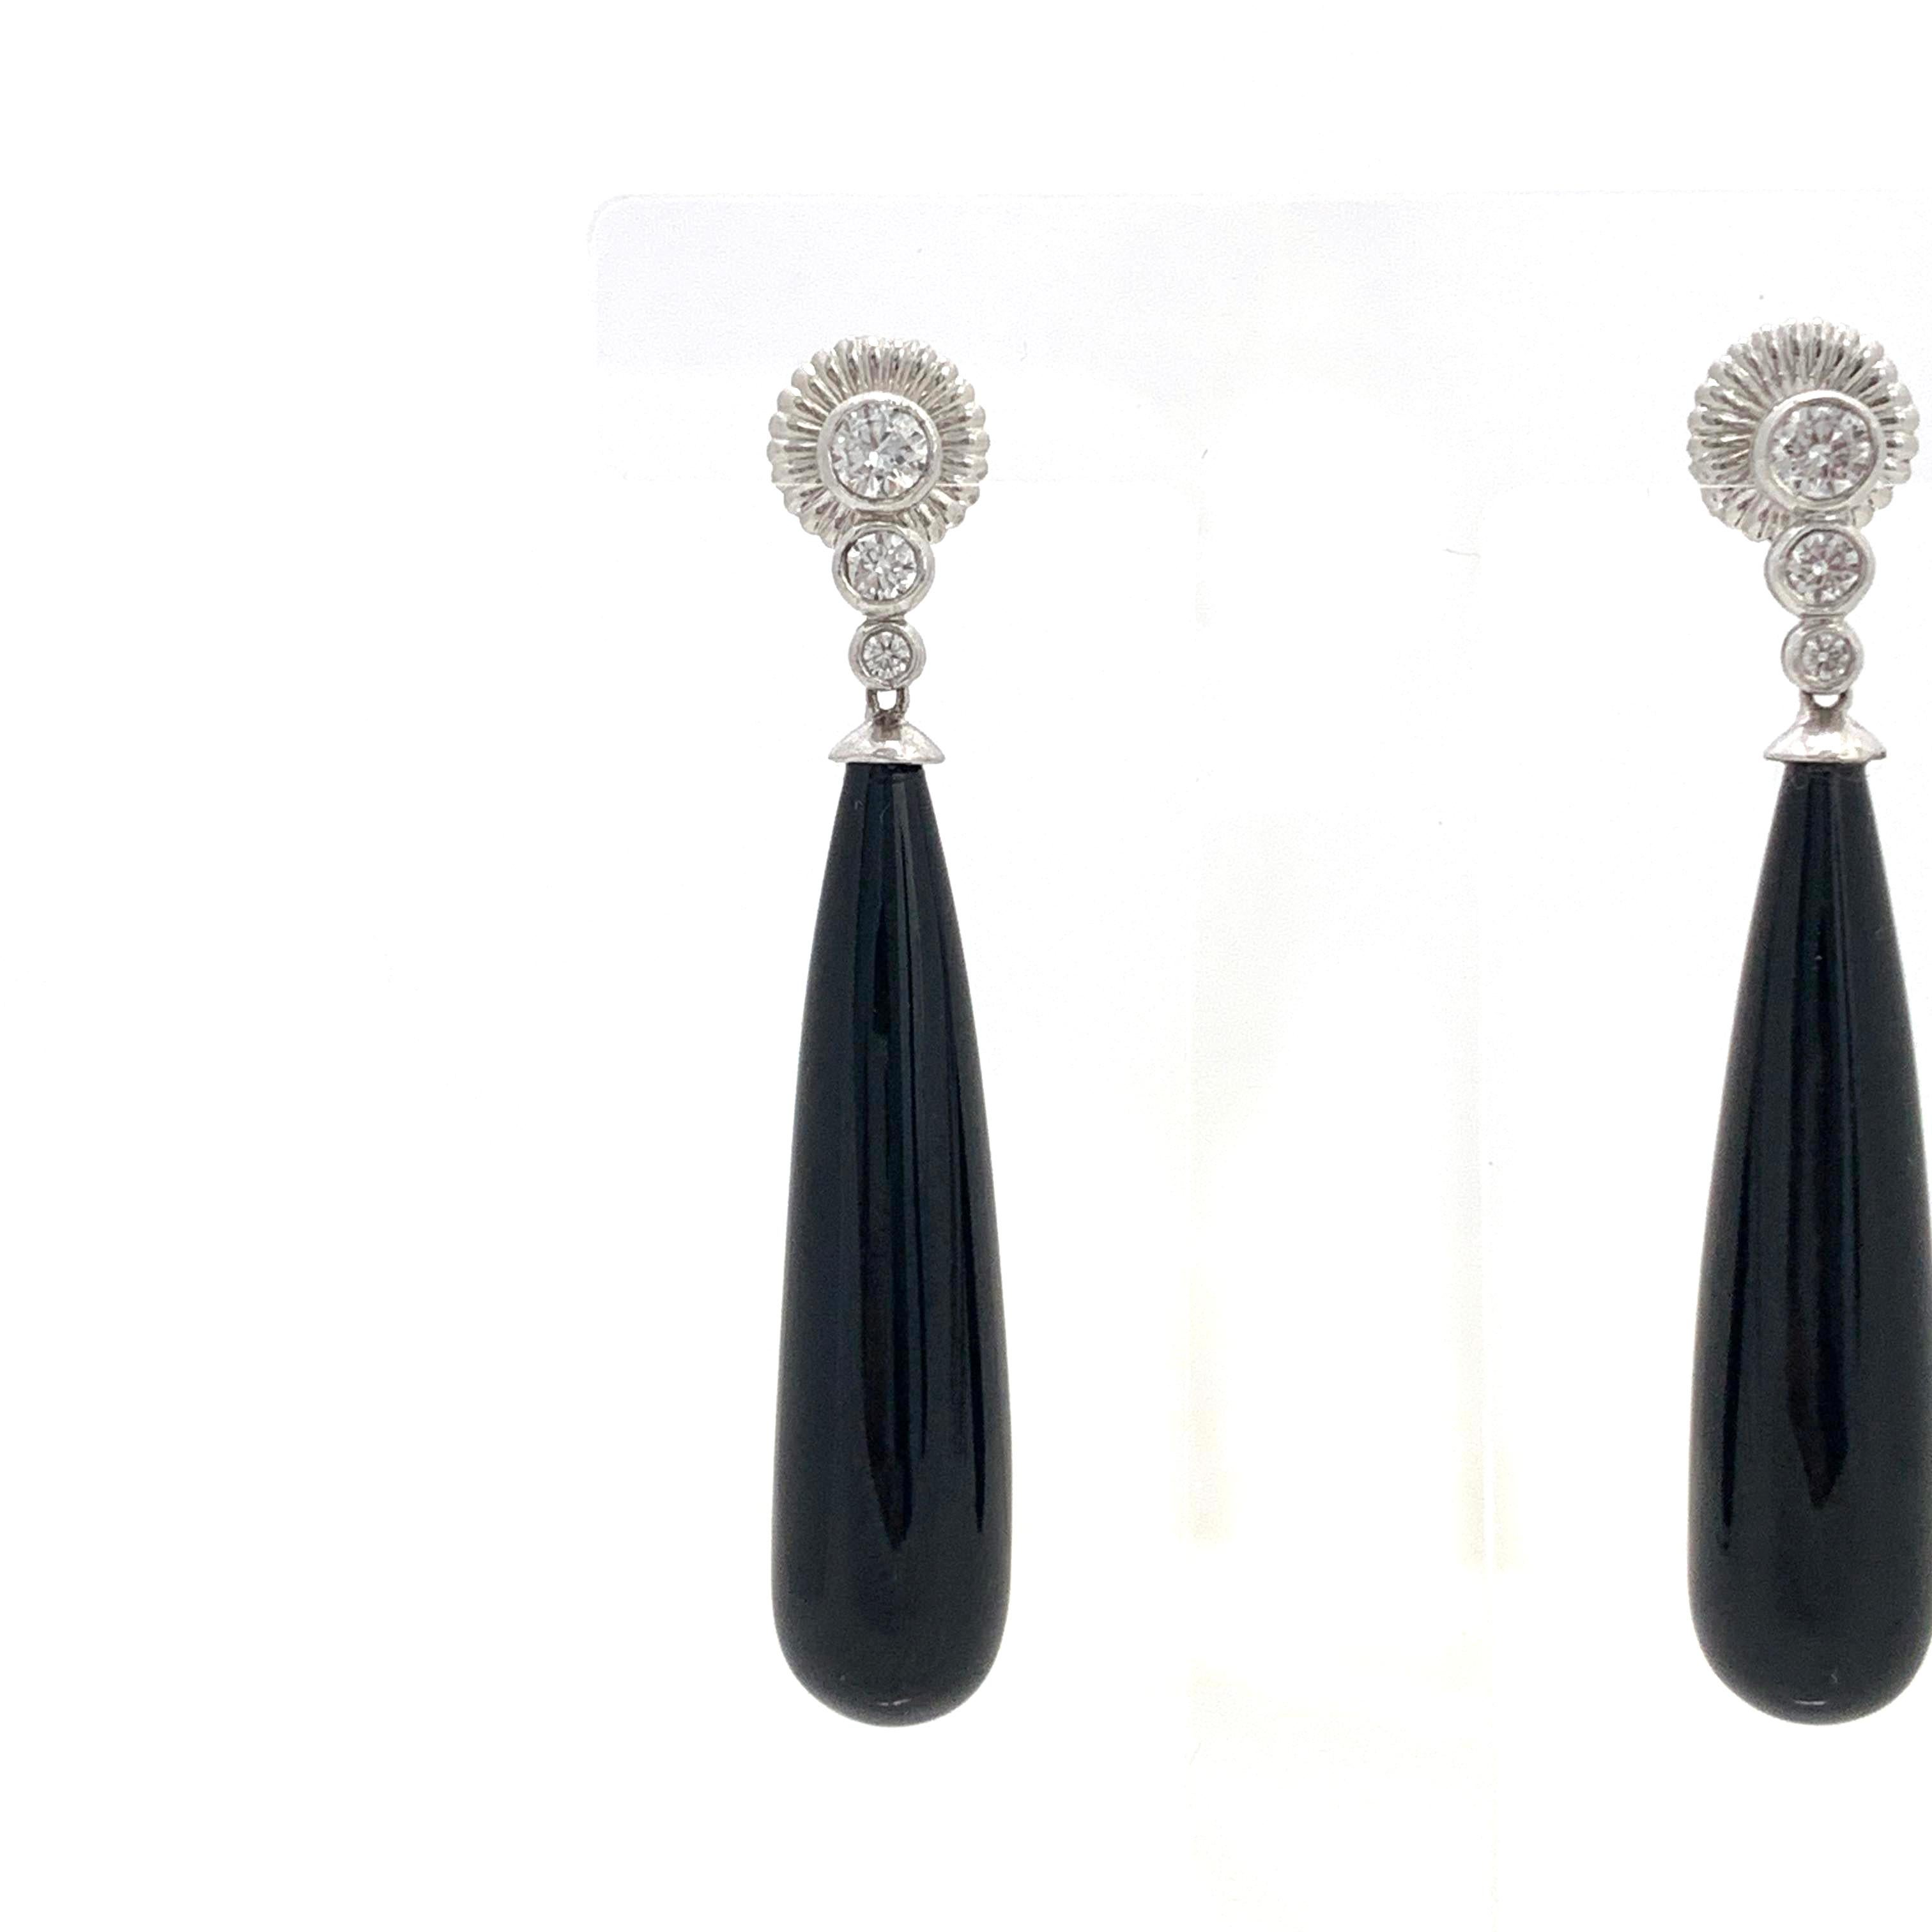 Art Deco Style Elongate Teardrop Onyx Sterling Silver Earrings 1